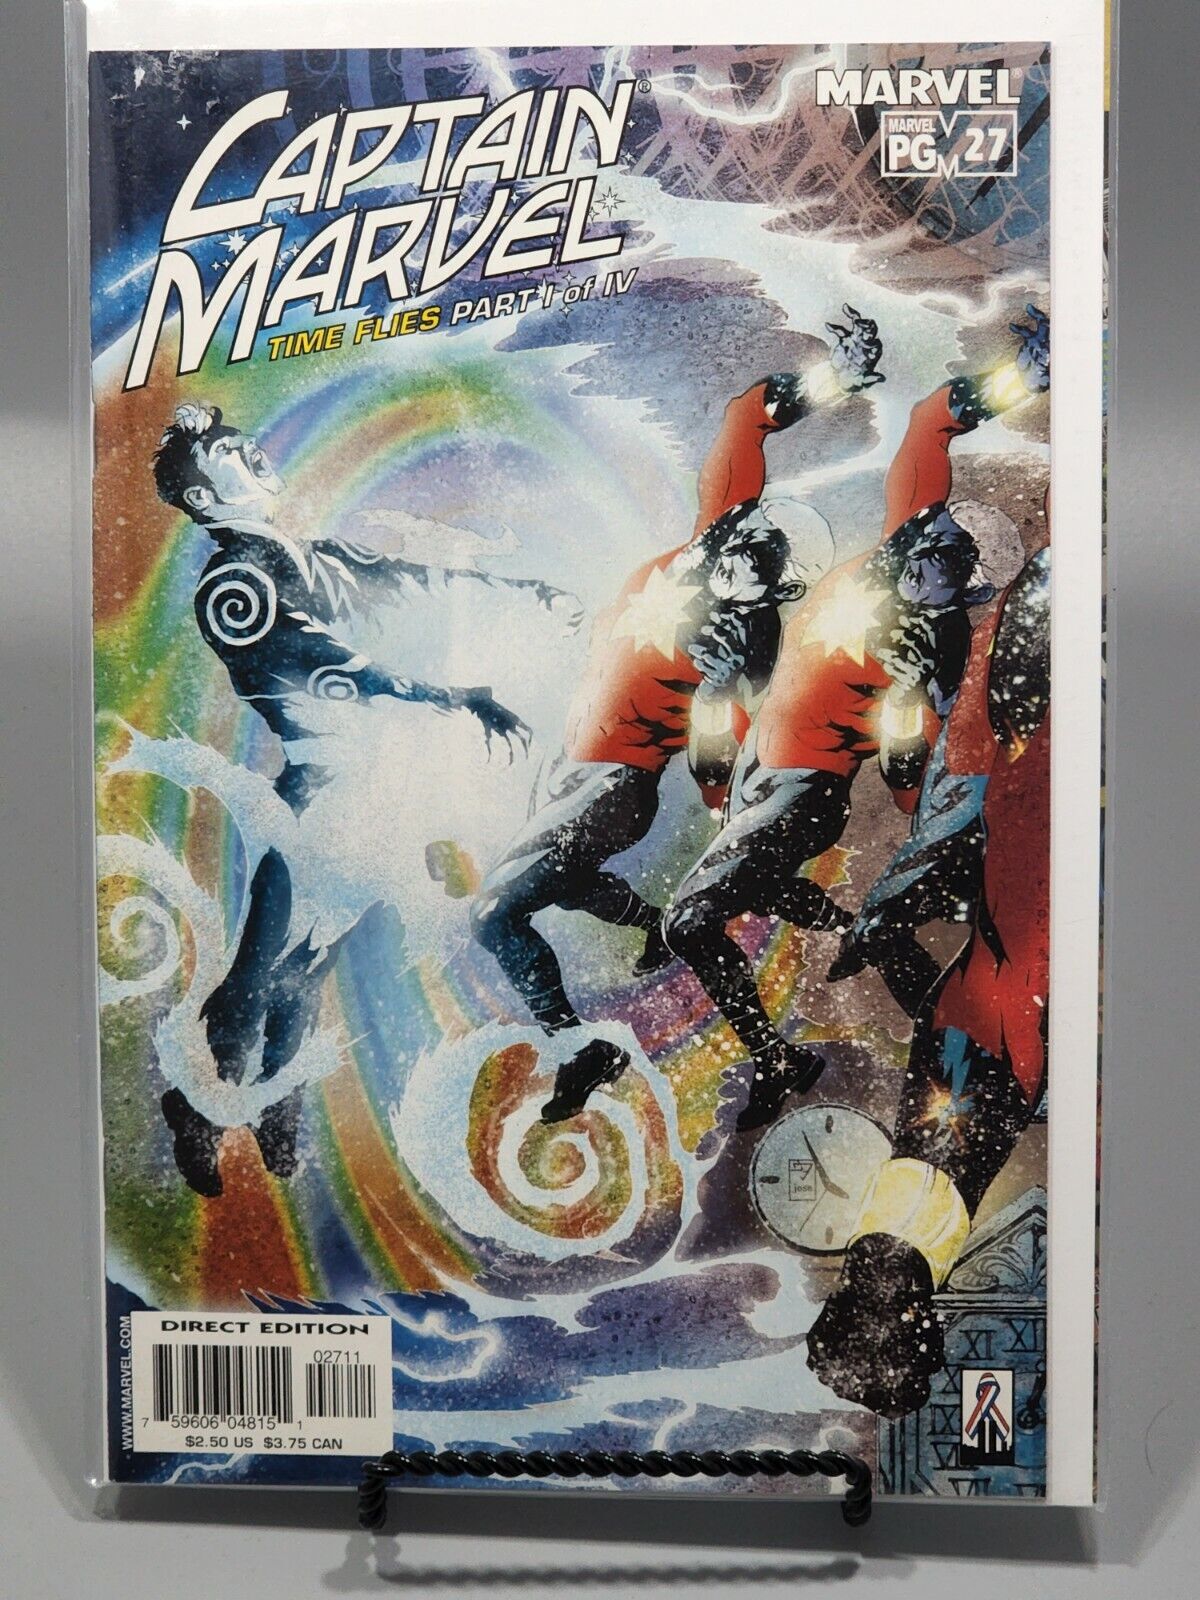 Captain Marvel #27 2002 Marvel Comics Time Flies Part 1 VF/NM 9.0